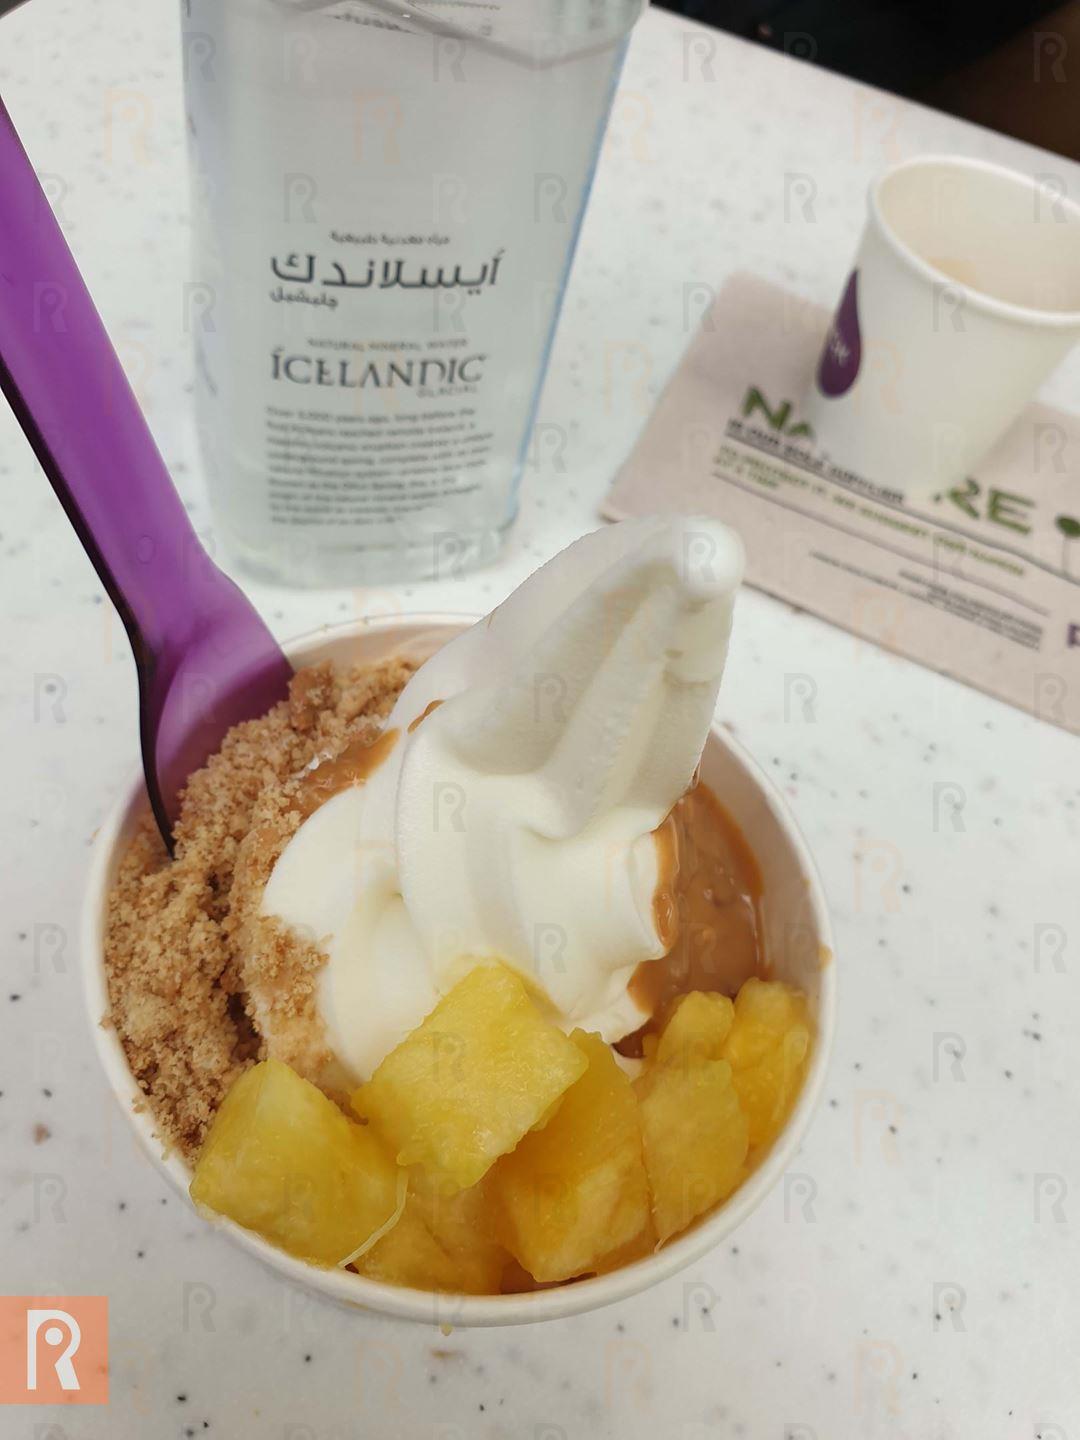 Where to find the Healthiest Frozen Yogurt in Kuwait?